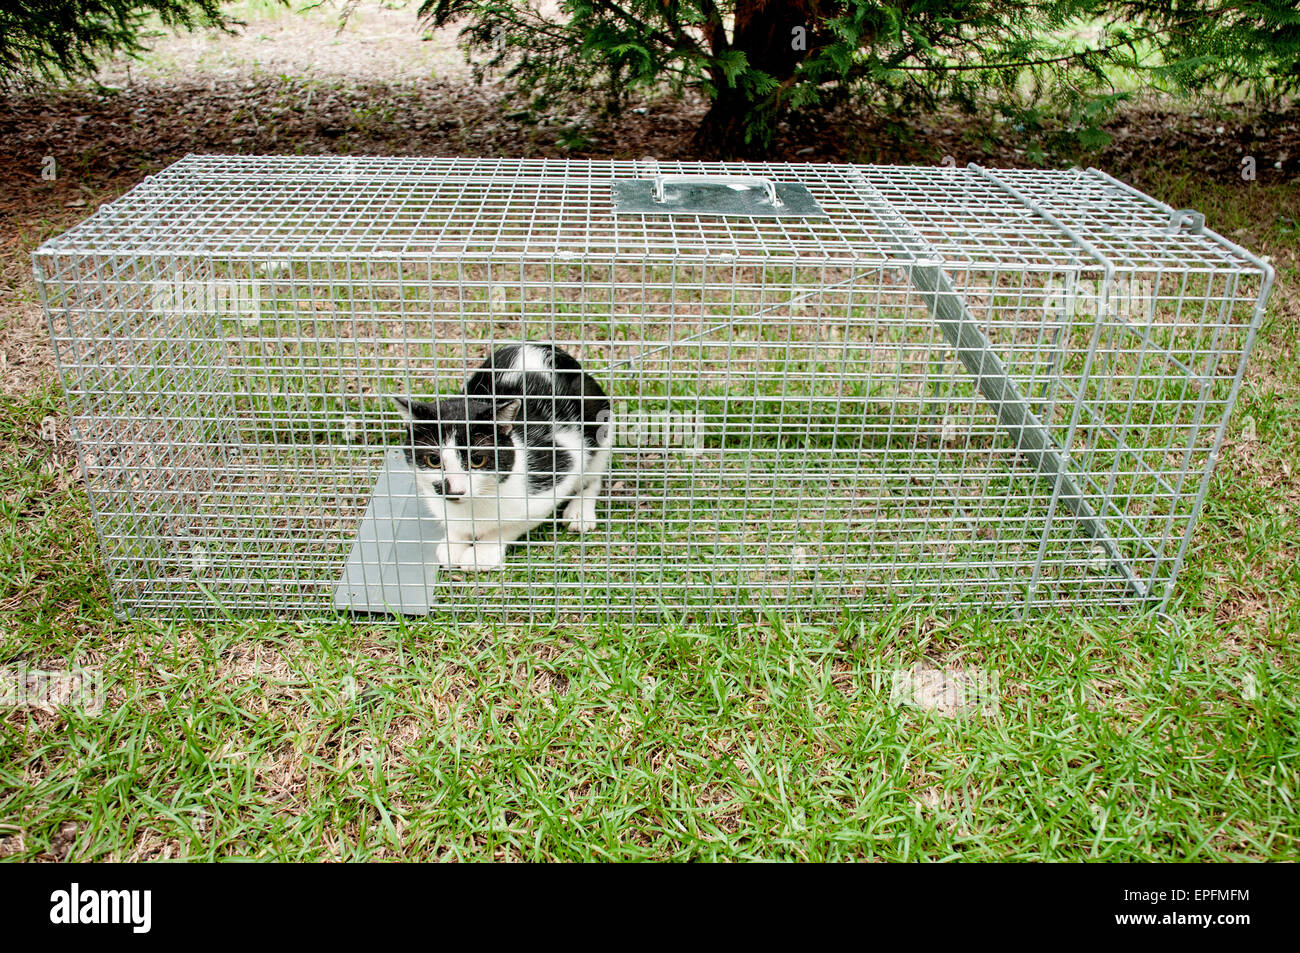 Trappola per gatti immagini e fotografie stock ad alta risoluzione - Alamy